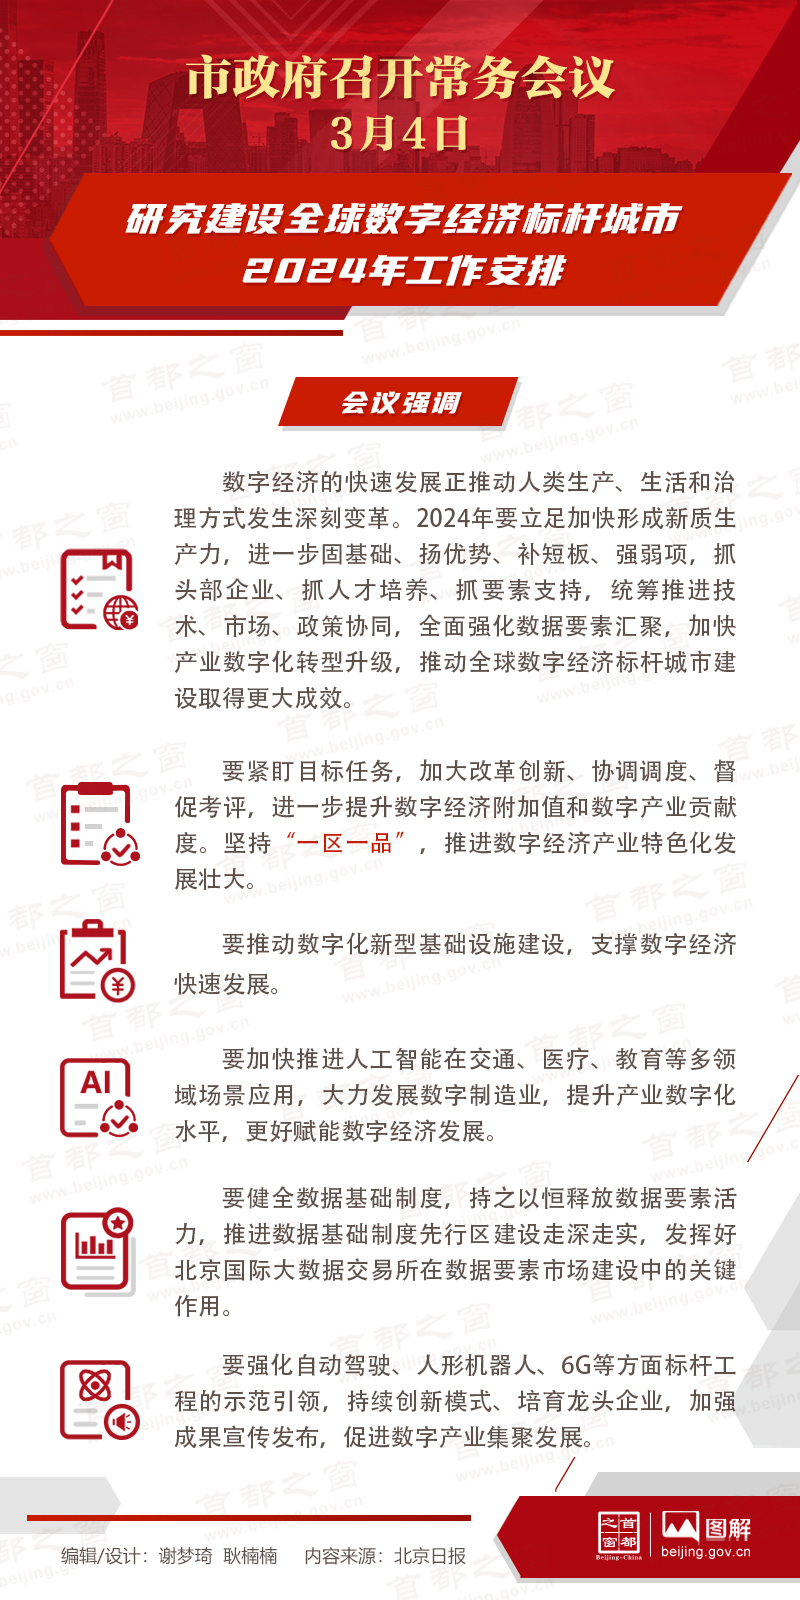 北京市政府常务会议图解：研究建设全球数字经济标杆城市2024年工作安排